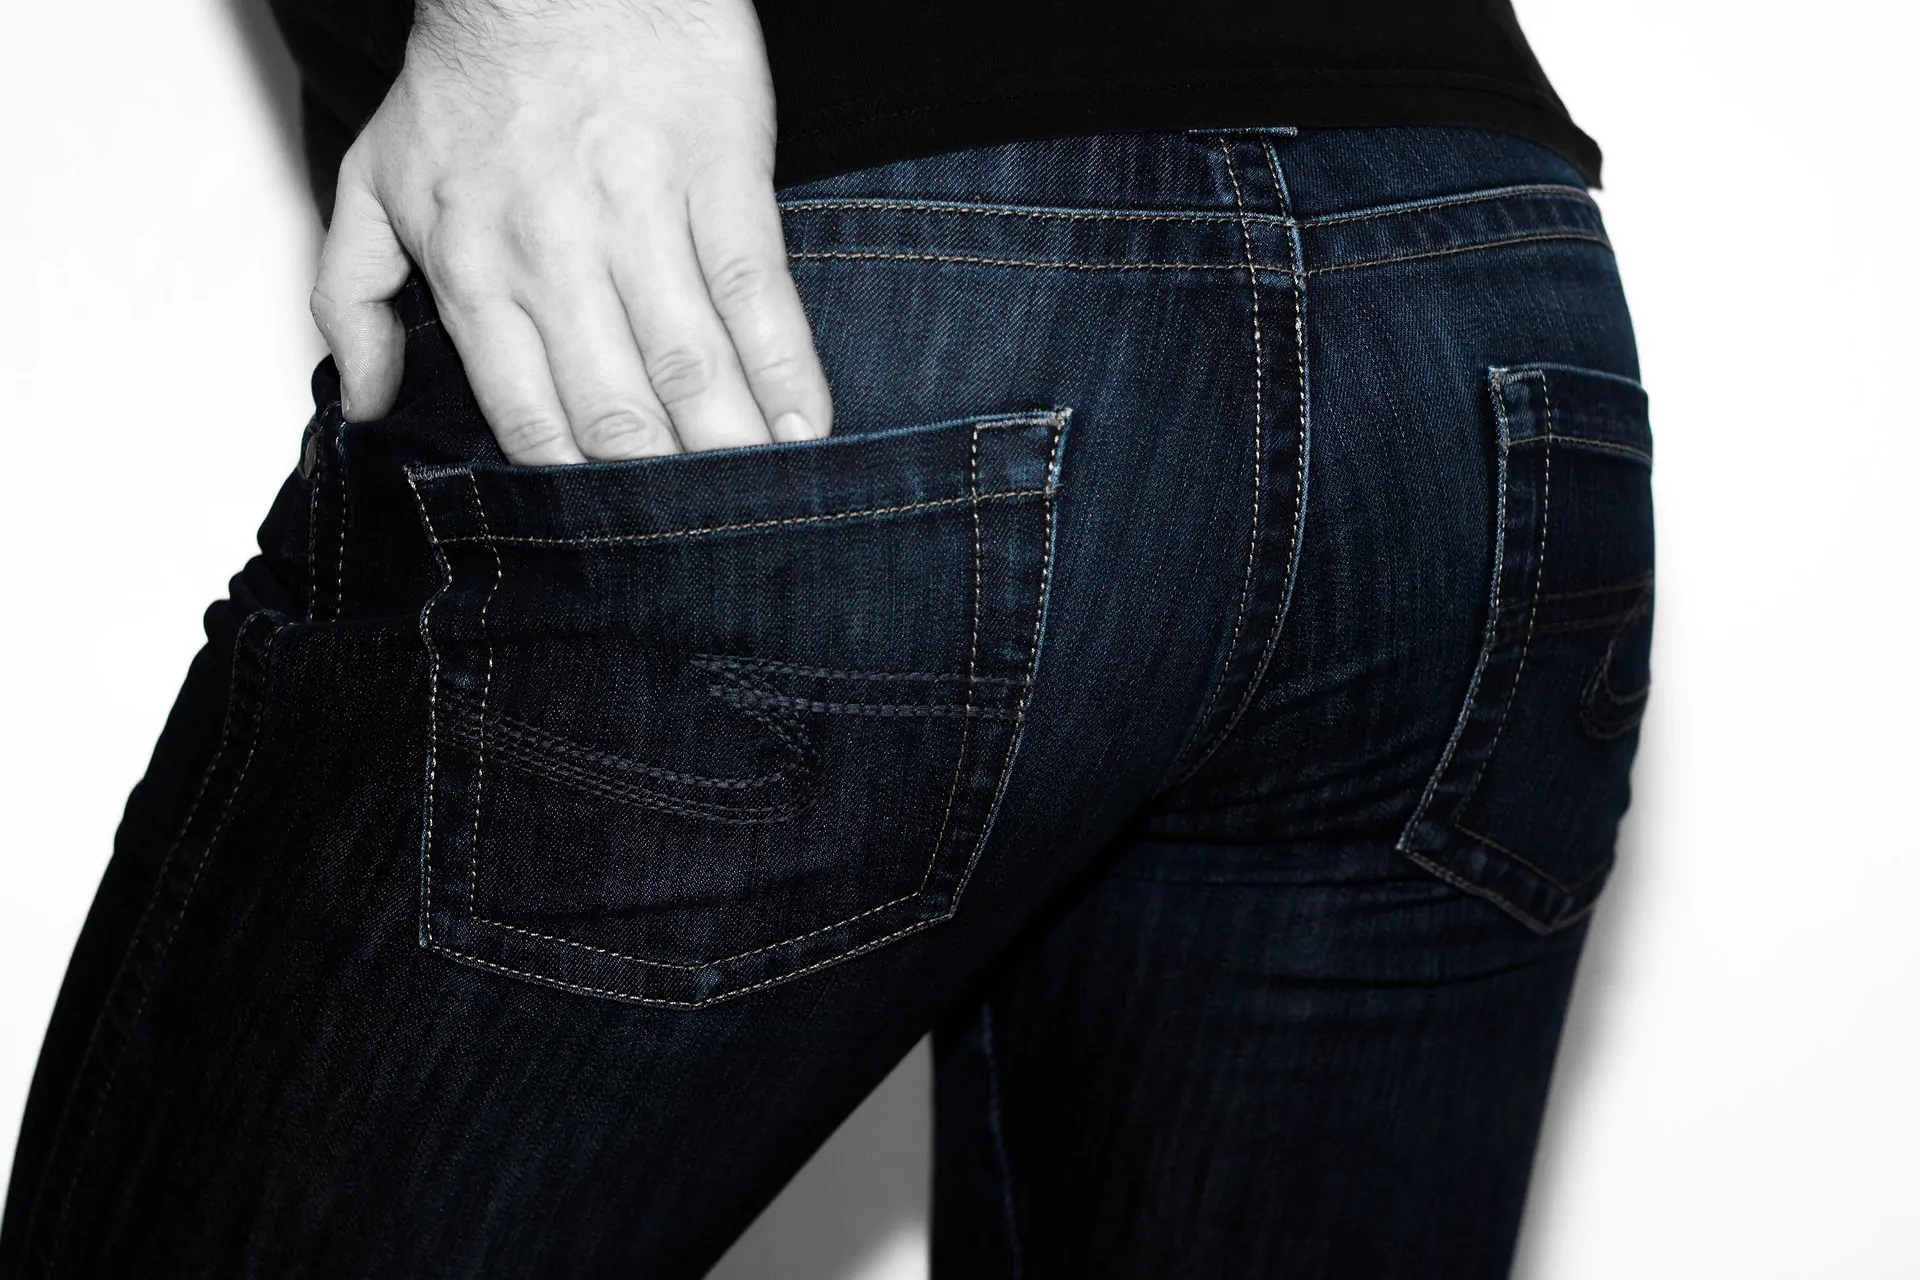 Scarpe e jeans da uomo: l'outfit migliore da scegliere